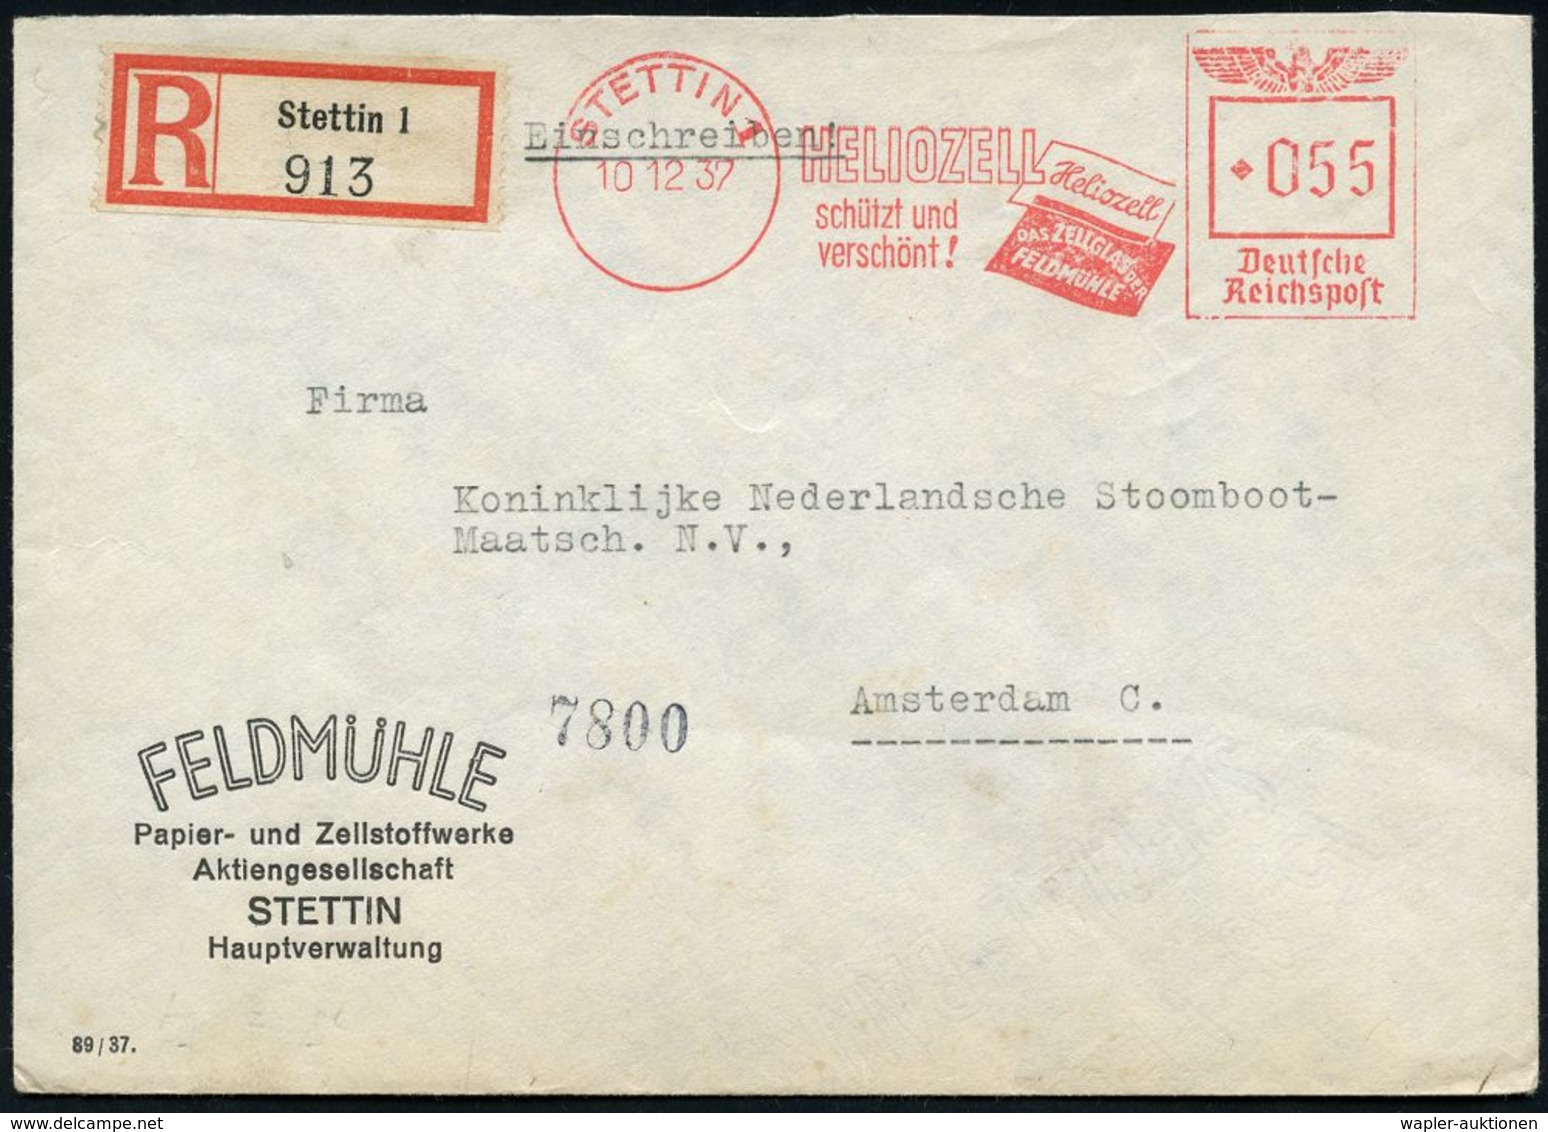 PAPIER / PAPIERVERARBEITUNG / ZELLSTOFF : STETTIN 1/ HELIOZELL/ Schützt U./ Verschönt!.. 1937 (10.12.) AFS 055 Pf. (Heli - Non Classificati